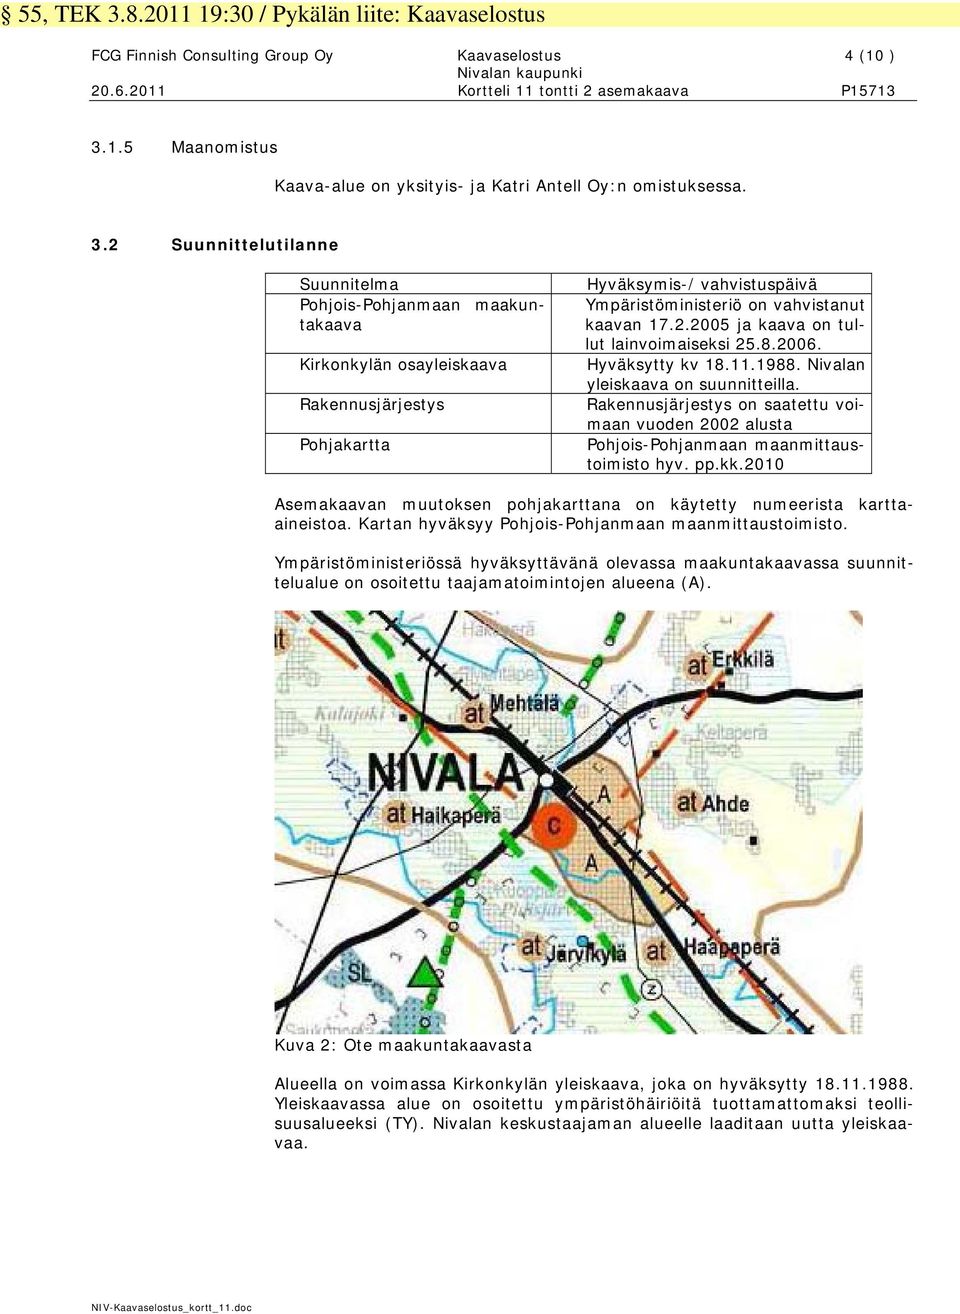 8.2006. Hyväksytty kv 18.11.1988. Nivalan yleiskaava on suunnitteilla. Rakennusjärjestys on saatettu voimaan vuoden 2002 alusta Pohjois-Pohjanmaan maanmittaustoimisto hyv. pp.kk.